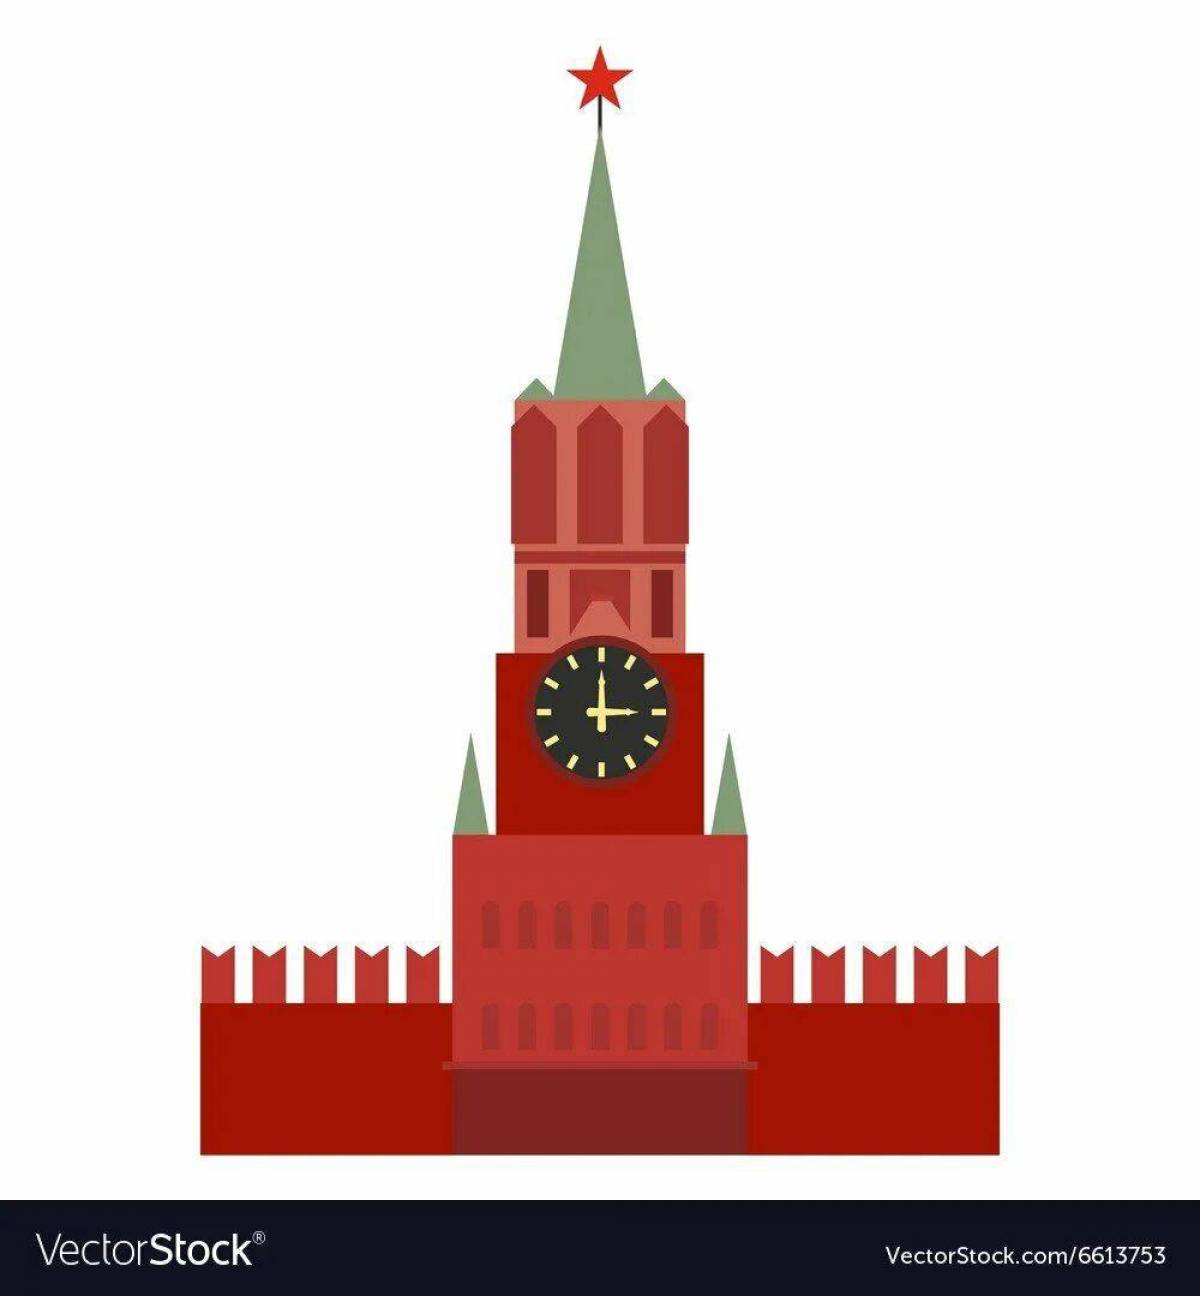 Кремль для детей дошкольного возраста #27